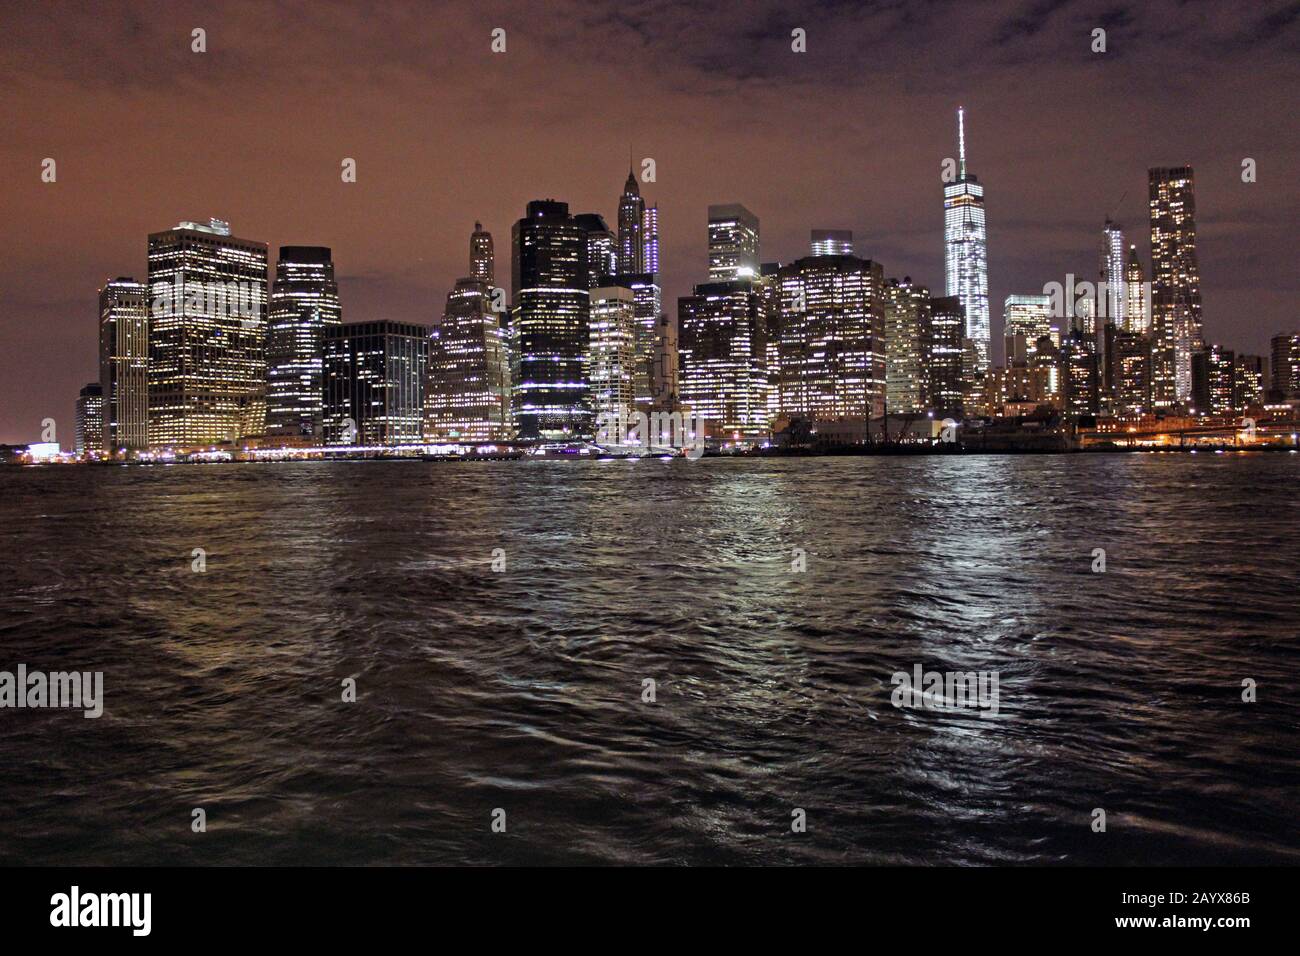 New York Night Skyline - vue nocturne de l'une des villes les plus emblématiques du monde Banque D'Images